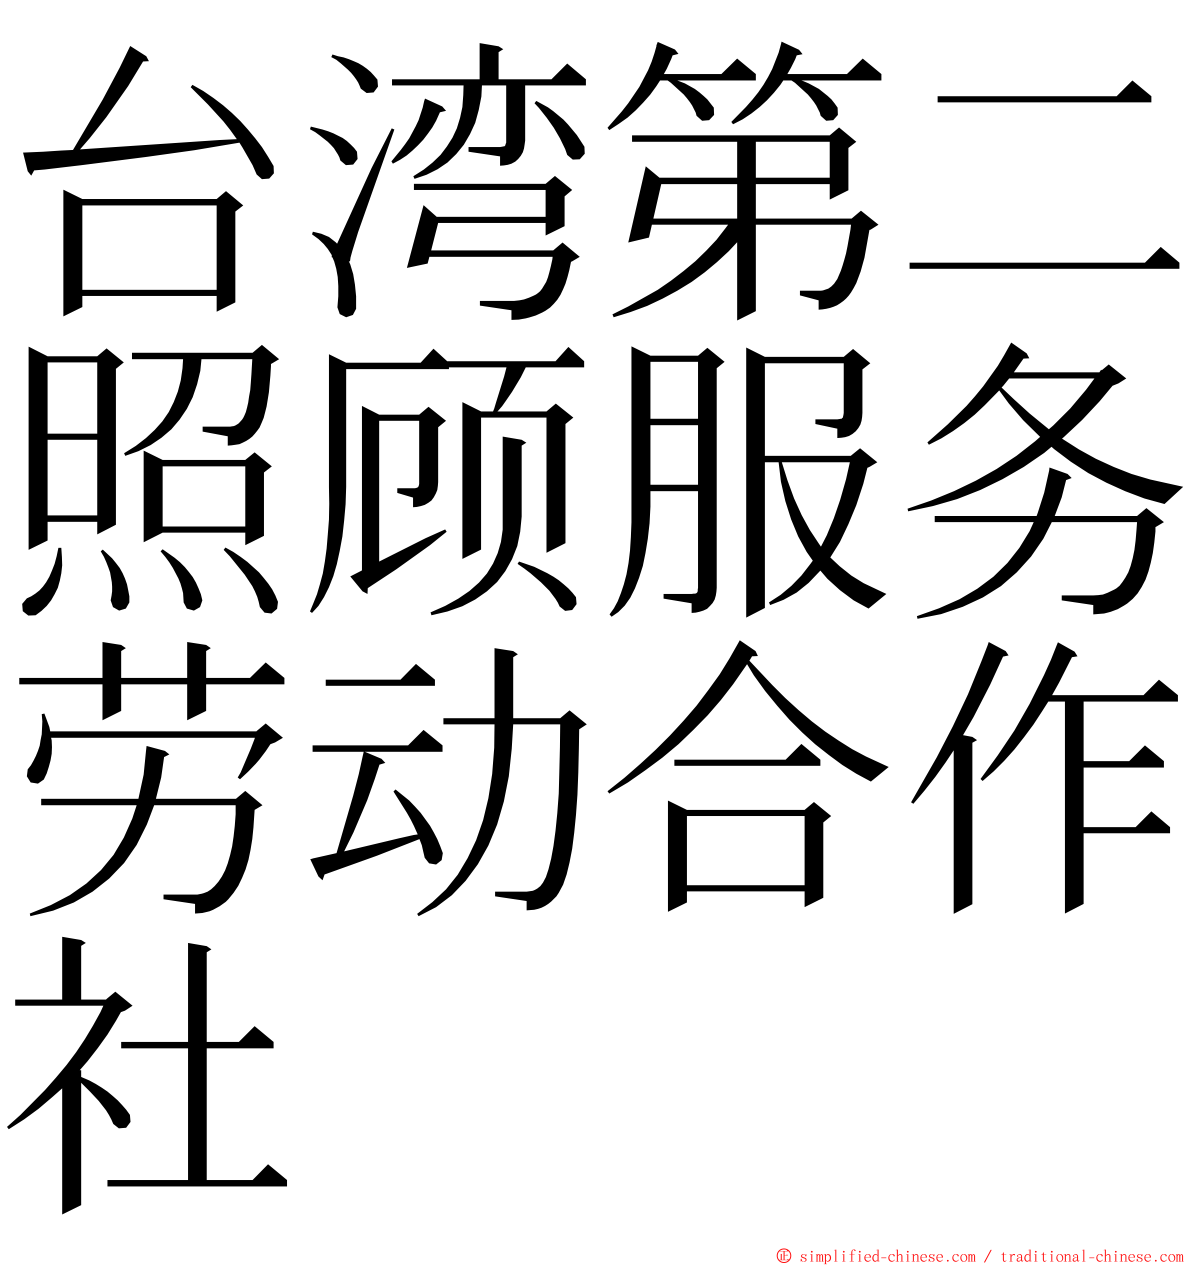 台湾第二照顾服务劳动合作社 ming font